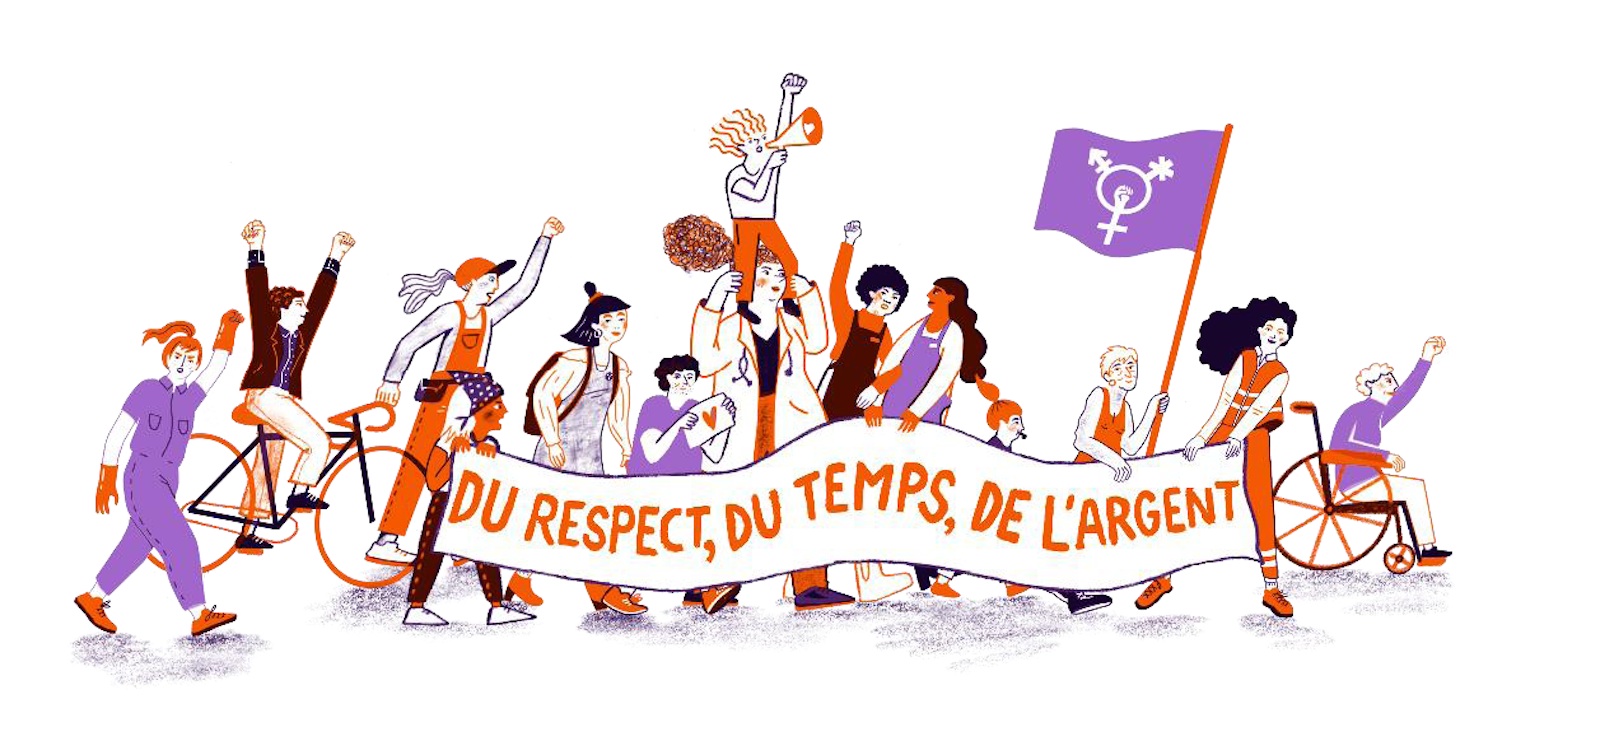 Dessin de la Grève féministe avec le slogan "du respect, du temps, de l'argent".